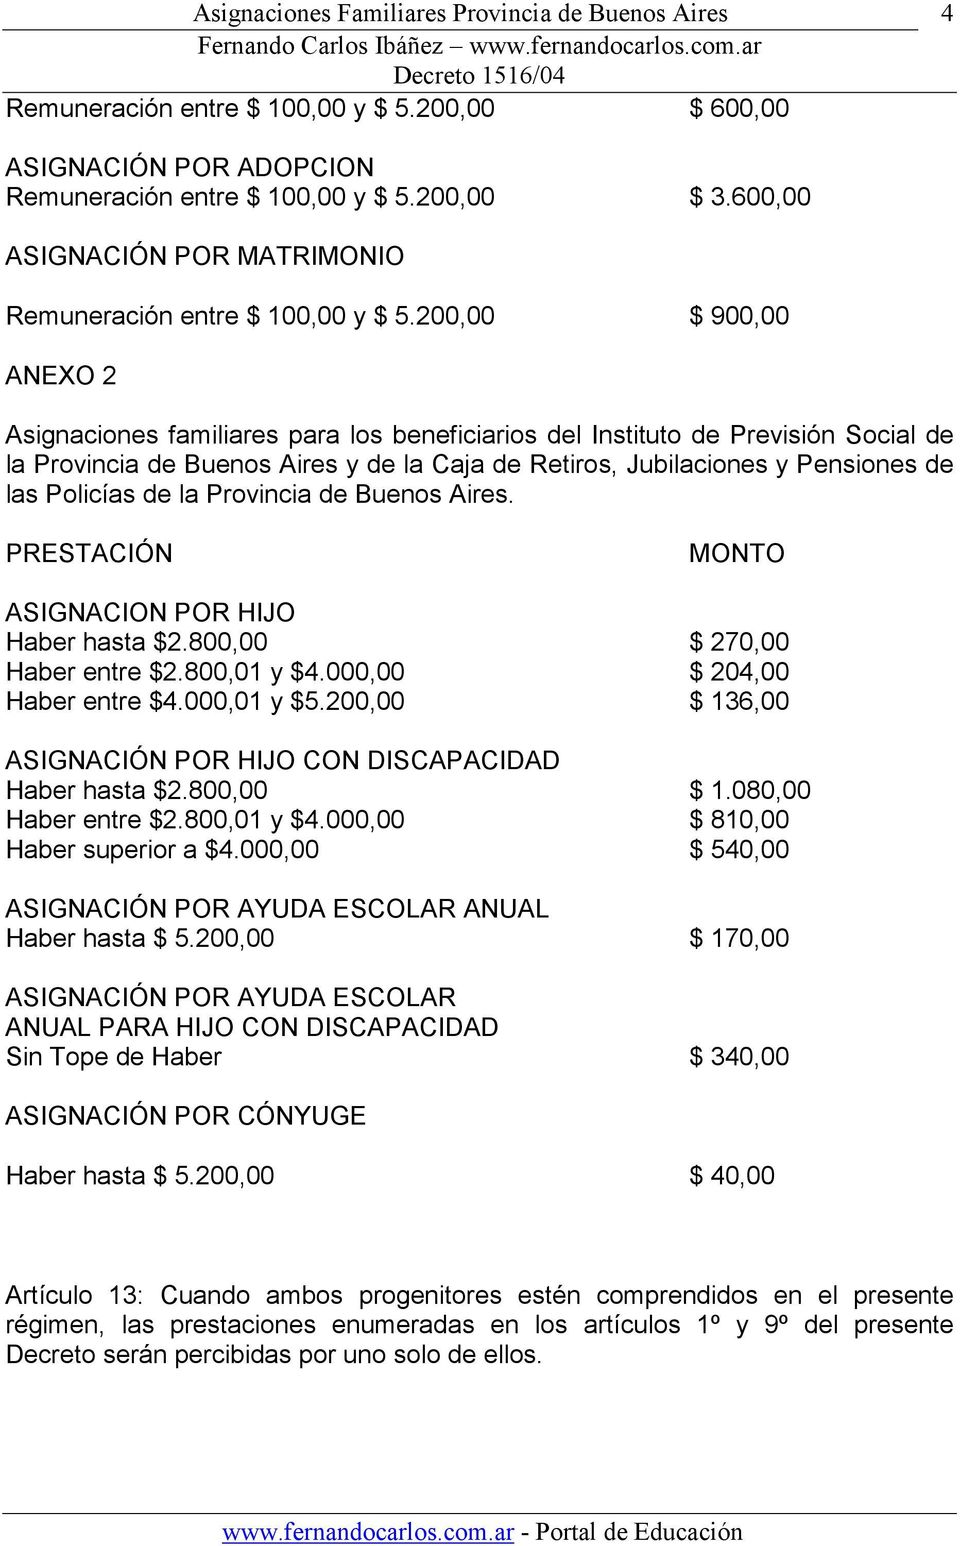 Policías de la Provincia de Buenos Aires. PRESTACIÓN MONTO ASIGNACION POR HIJO Haber hasta $2.800,00 $ 270,00 Haber entre $2.800,01 y $4.000,00 $ 204,00 Haber entre $4.000,01 y $5.